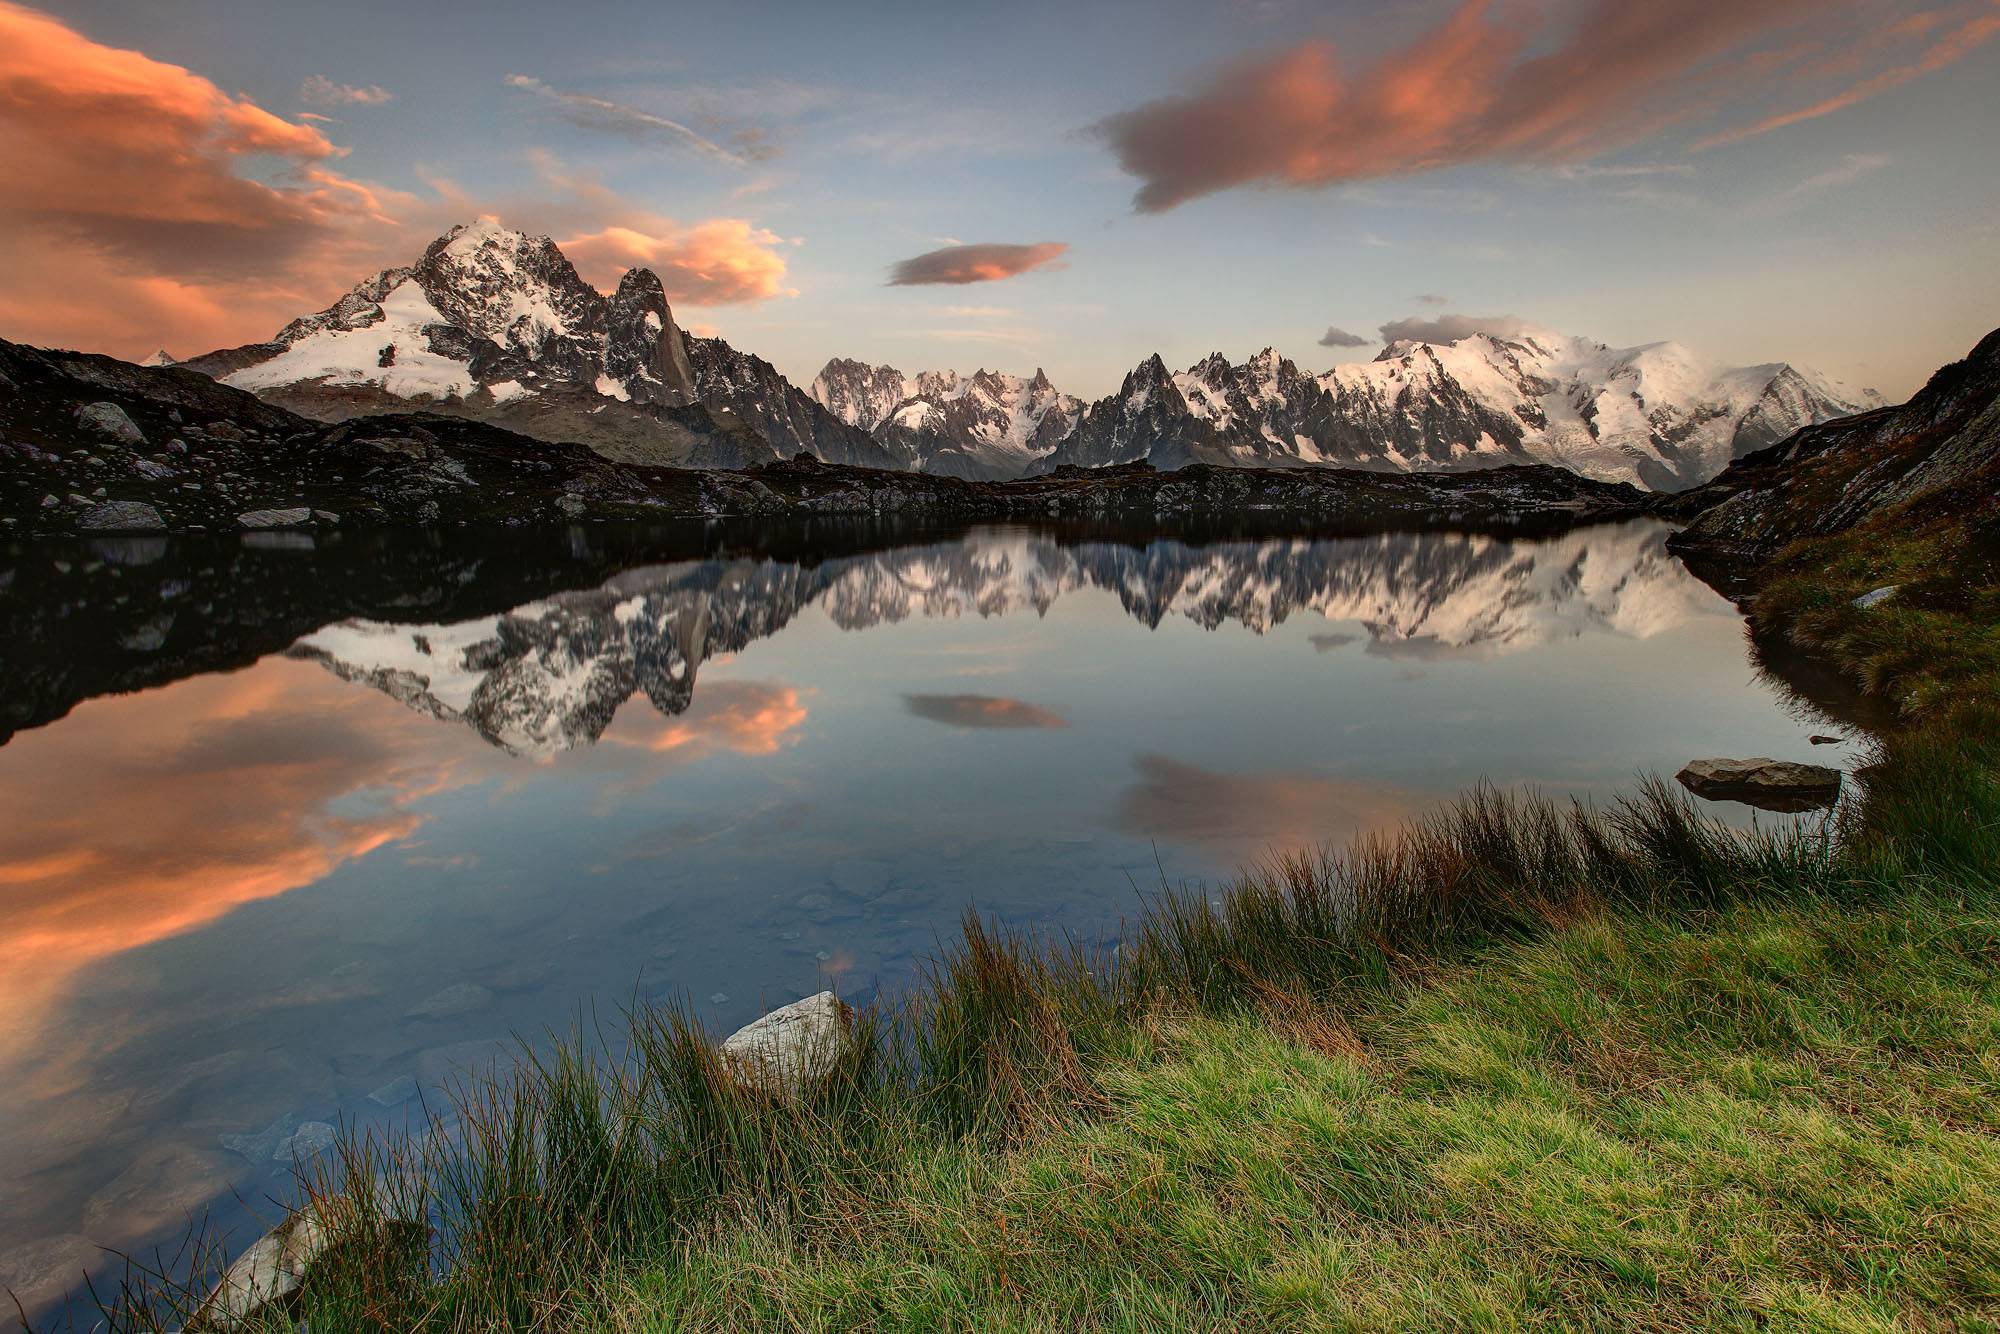 Das Mont Blanc Massiv in den französichen Alpen spiegelt sich im Alpensee Lac de Cheserys oberhalb von Chamonix bei Sonnenuntergang.